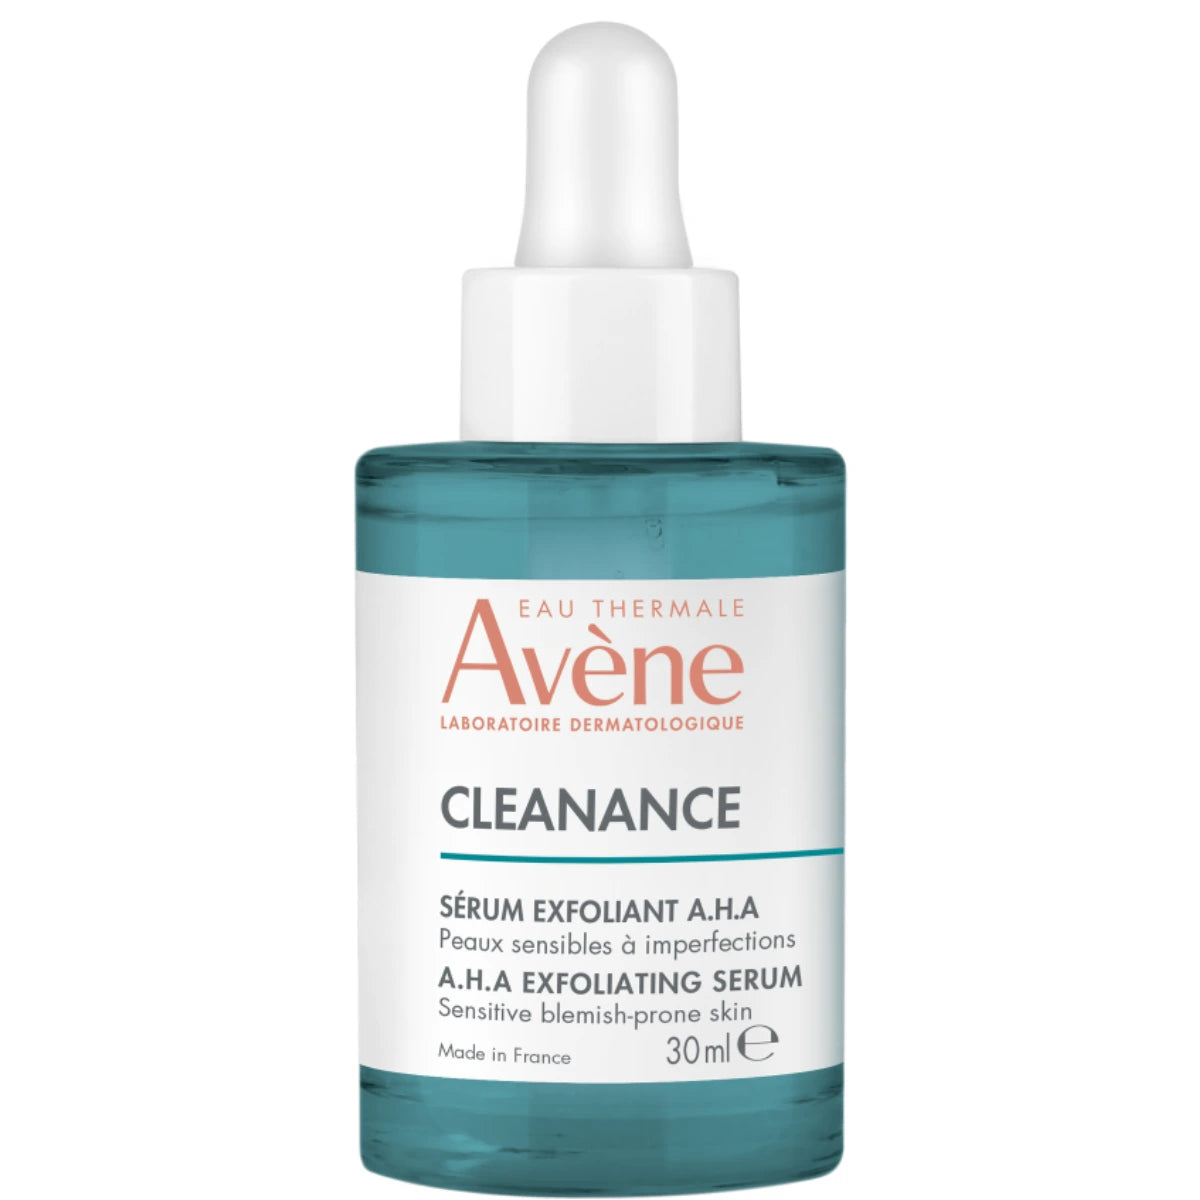 AVENE Cleanance Serum kuoriva kasvoseerumi 30 ml akneen taipuvaiselle herkälle iholle